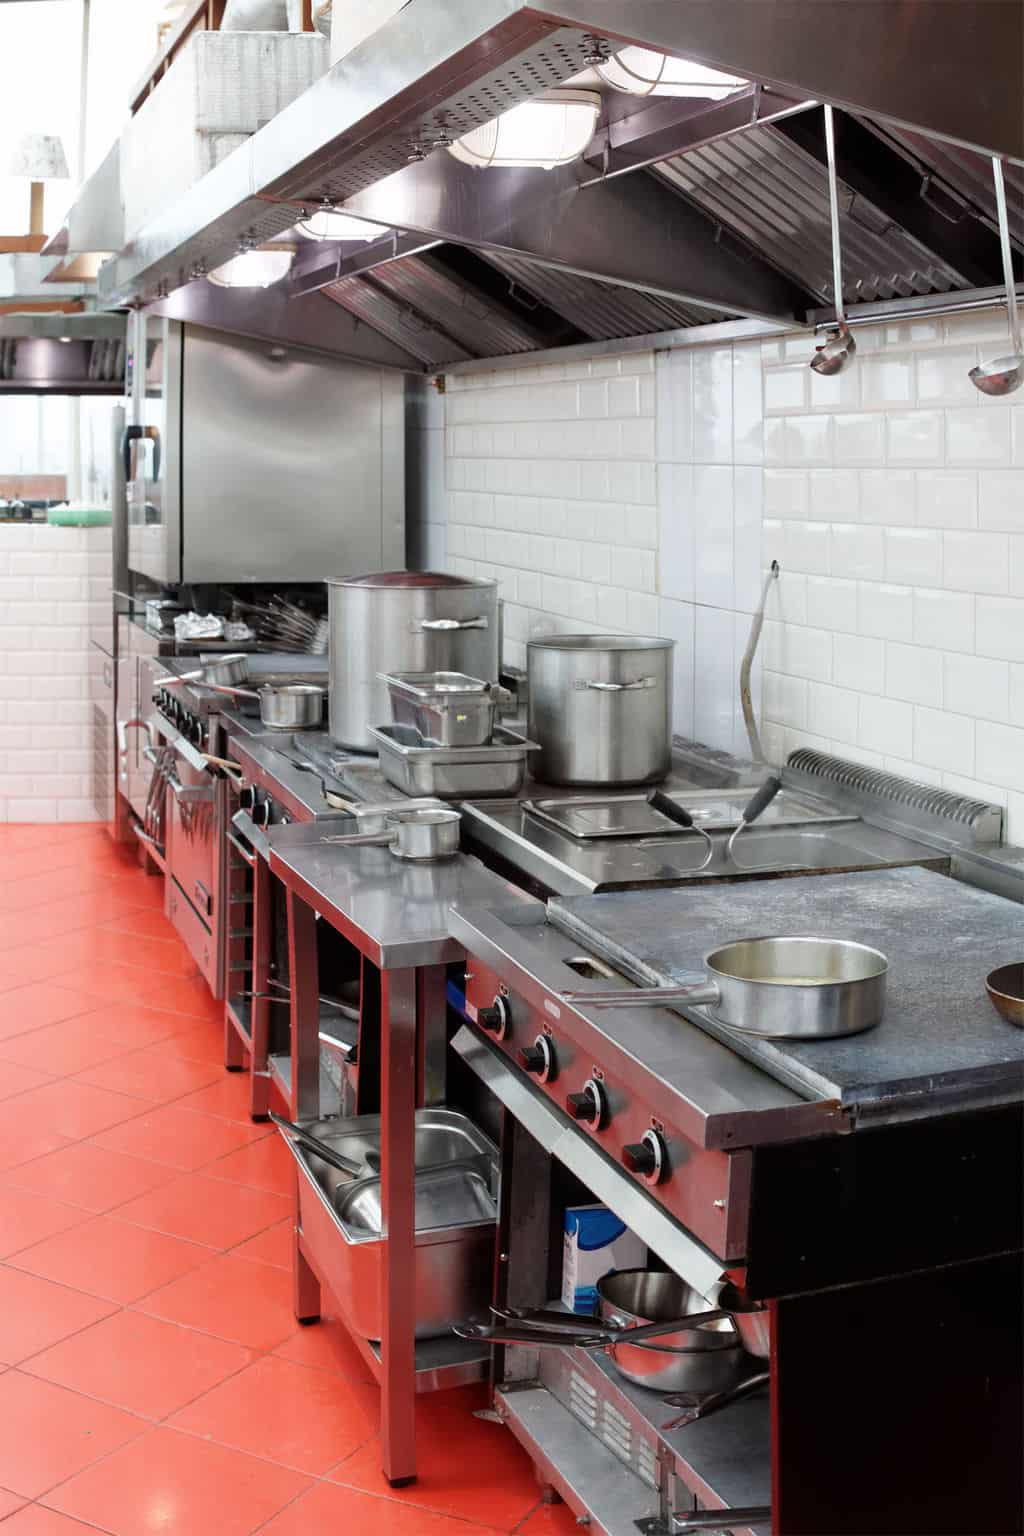 Restaurant Kitchen Floor Tiles
 The Best Restaurant Kitchen Flooring Ideas A Design For